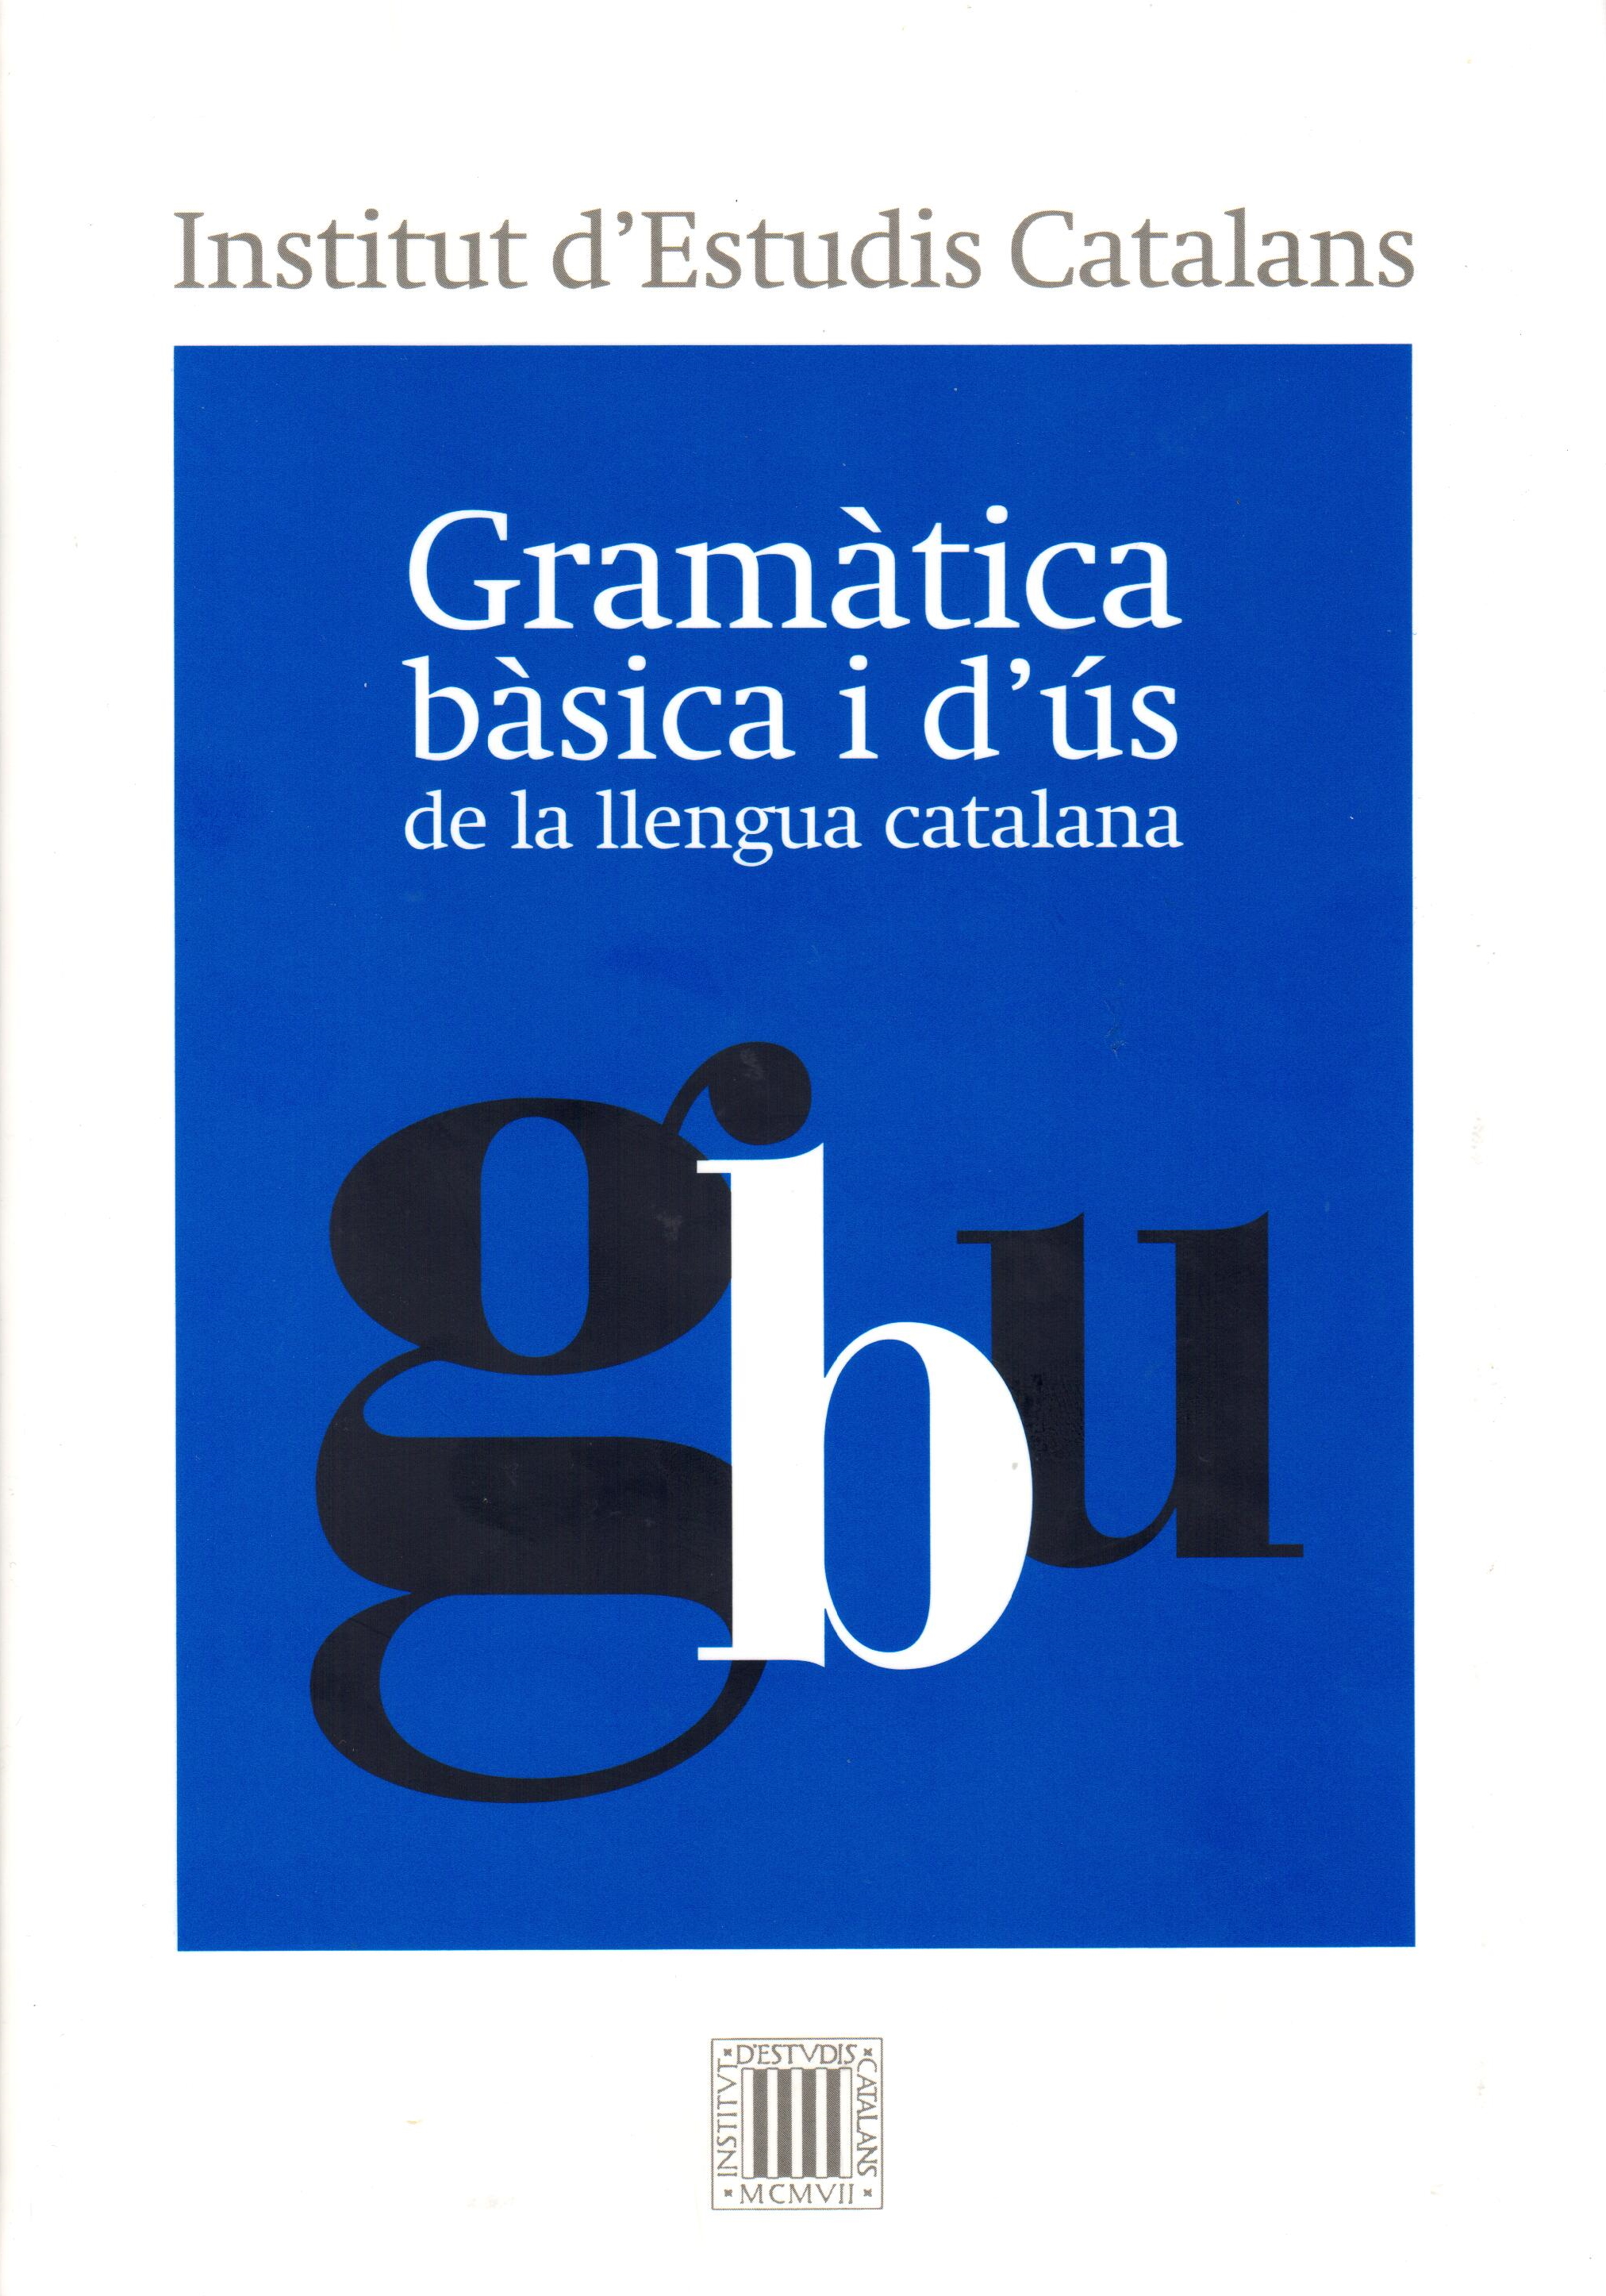 Gramàtica bàsica i d'ús de la llengua catalana. IEC, 578 p., 29 €.